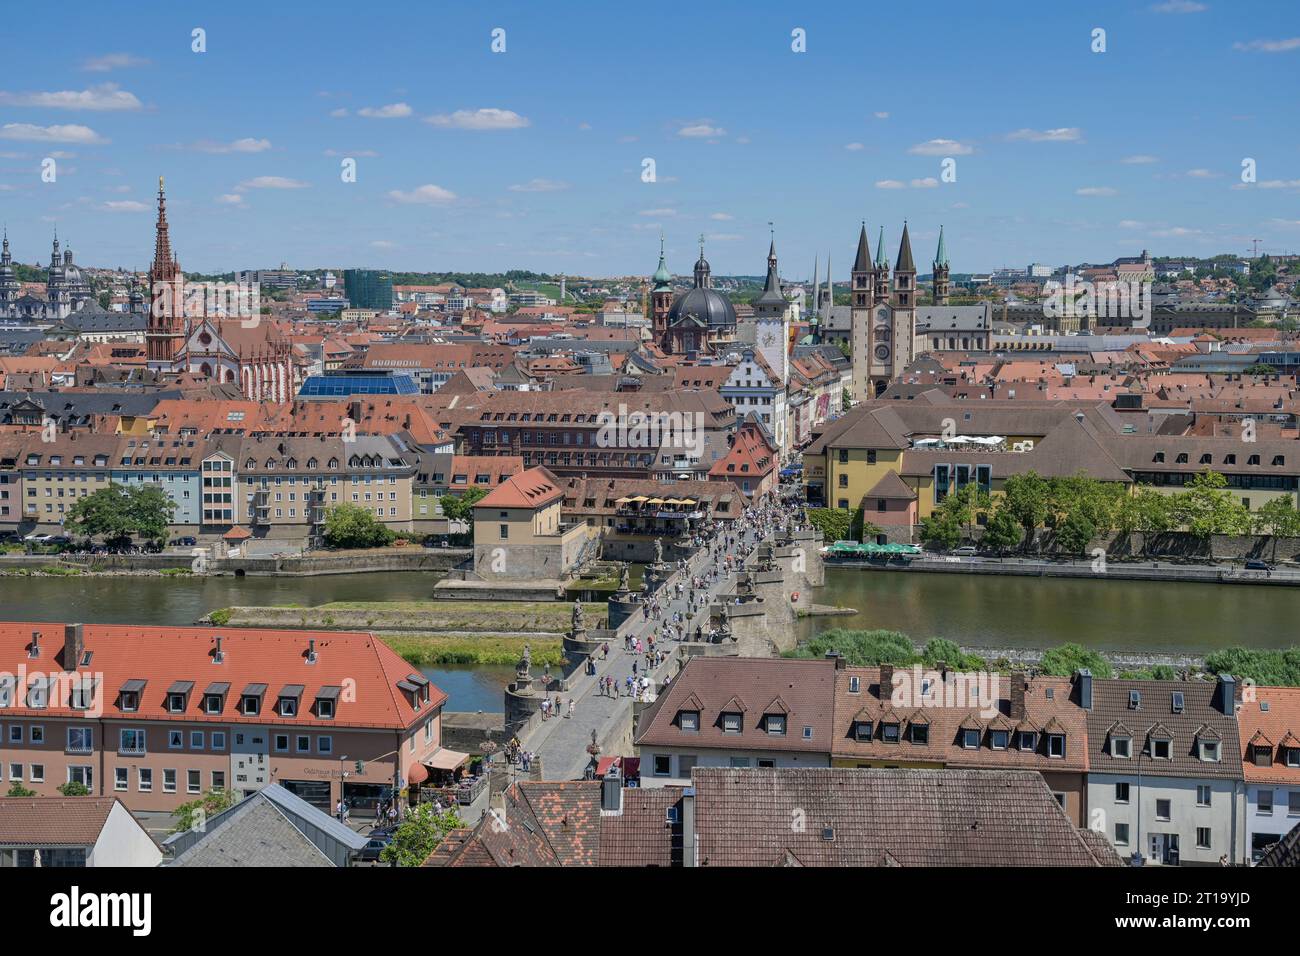 Stadtpanorama, Alte Mainbrücke, Main, Altstadt, Würzburg, Bayern, Deutschland Stock Photo